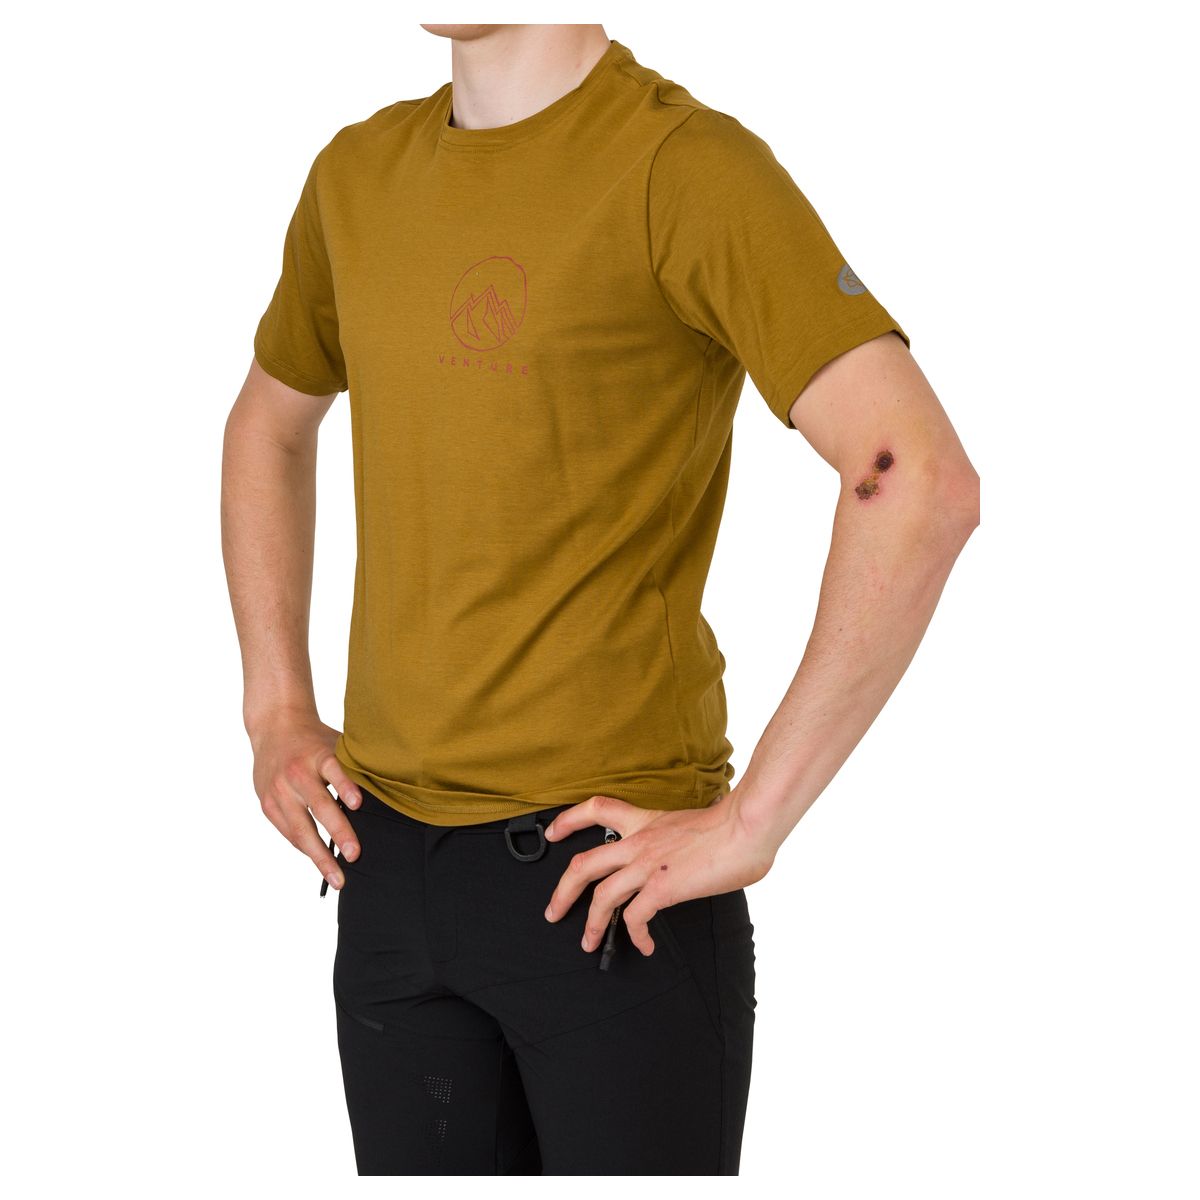 Performance Camiseta Venture fit example